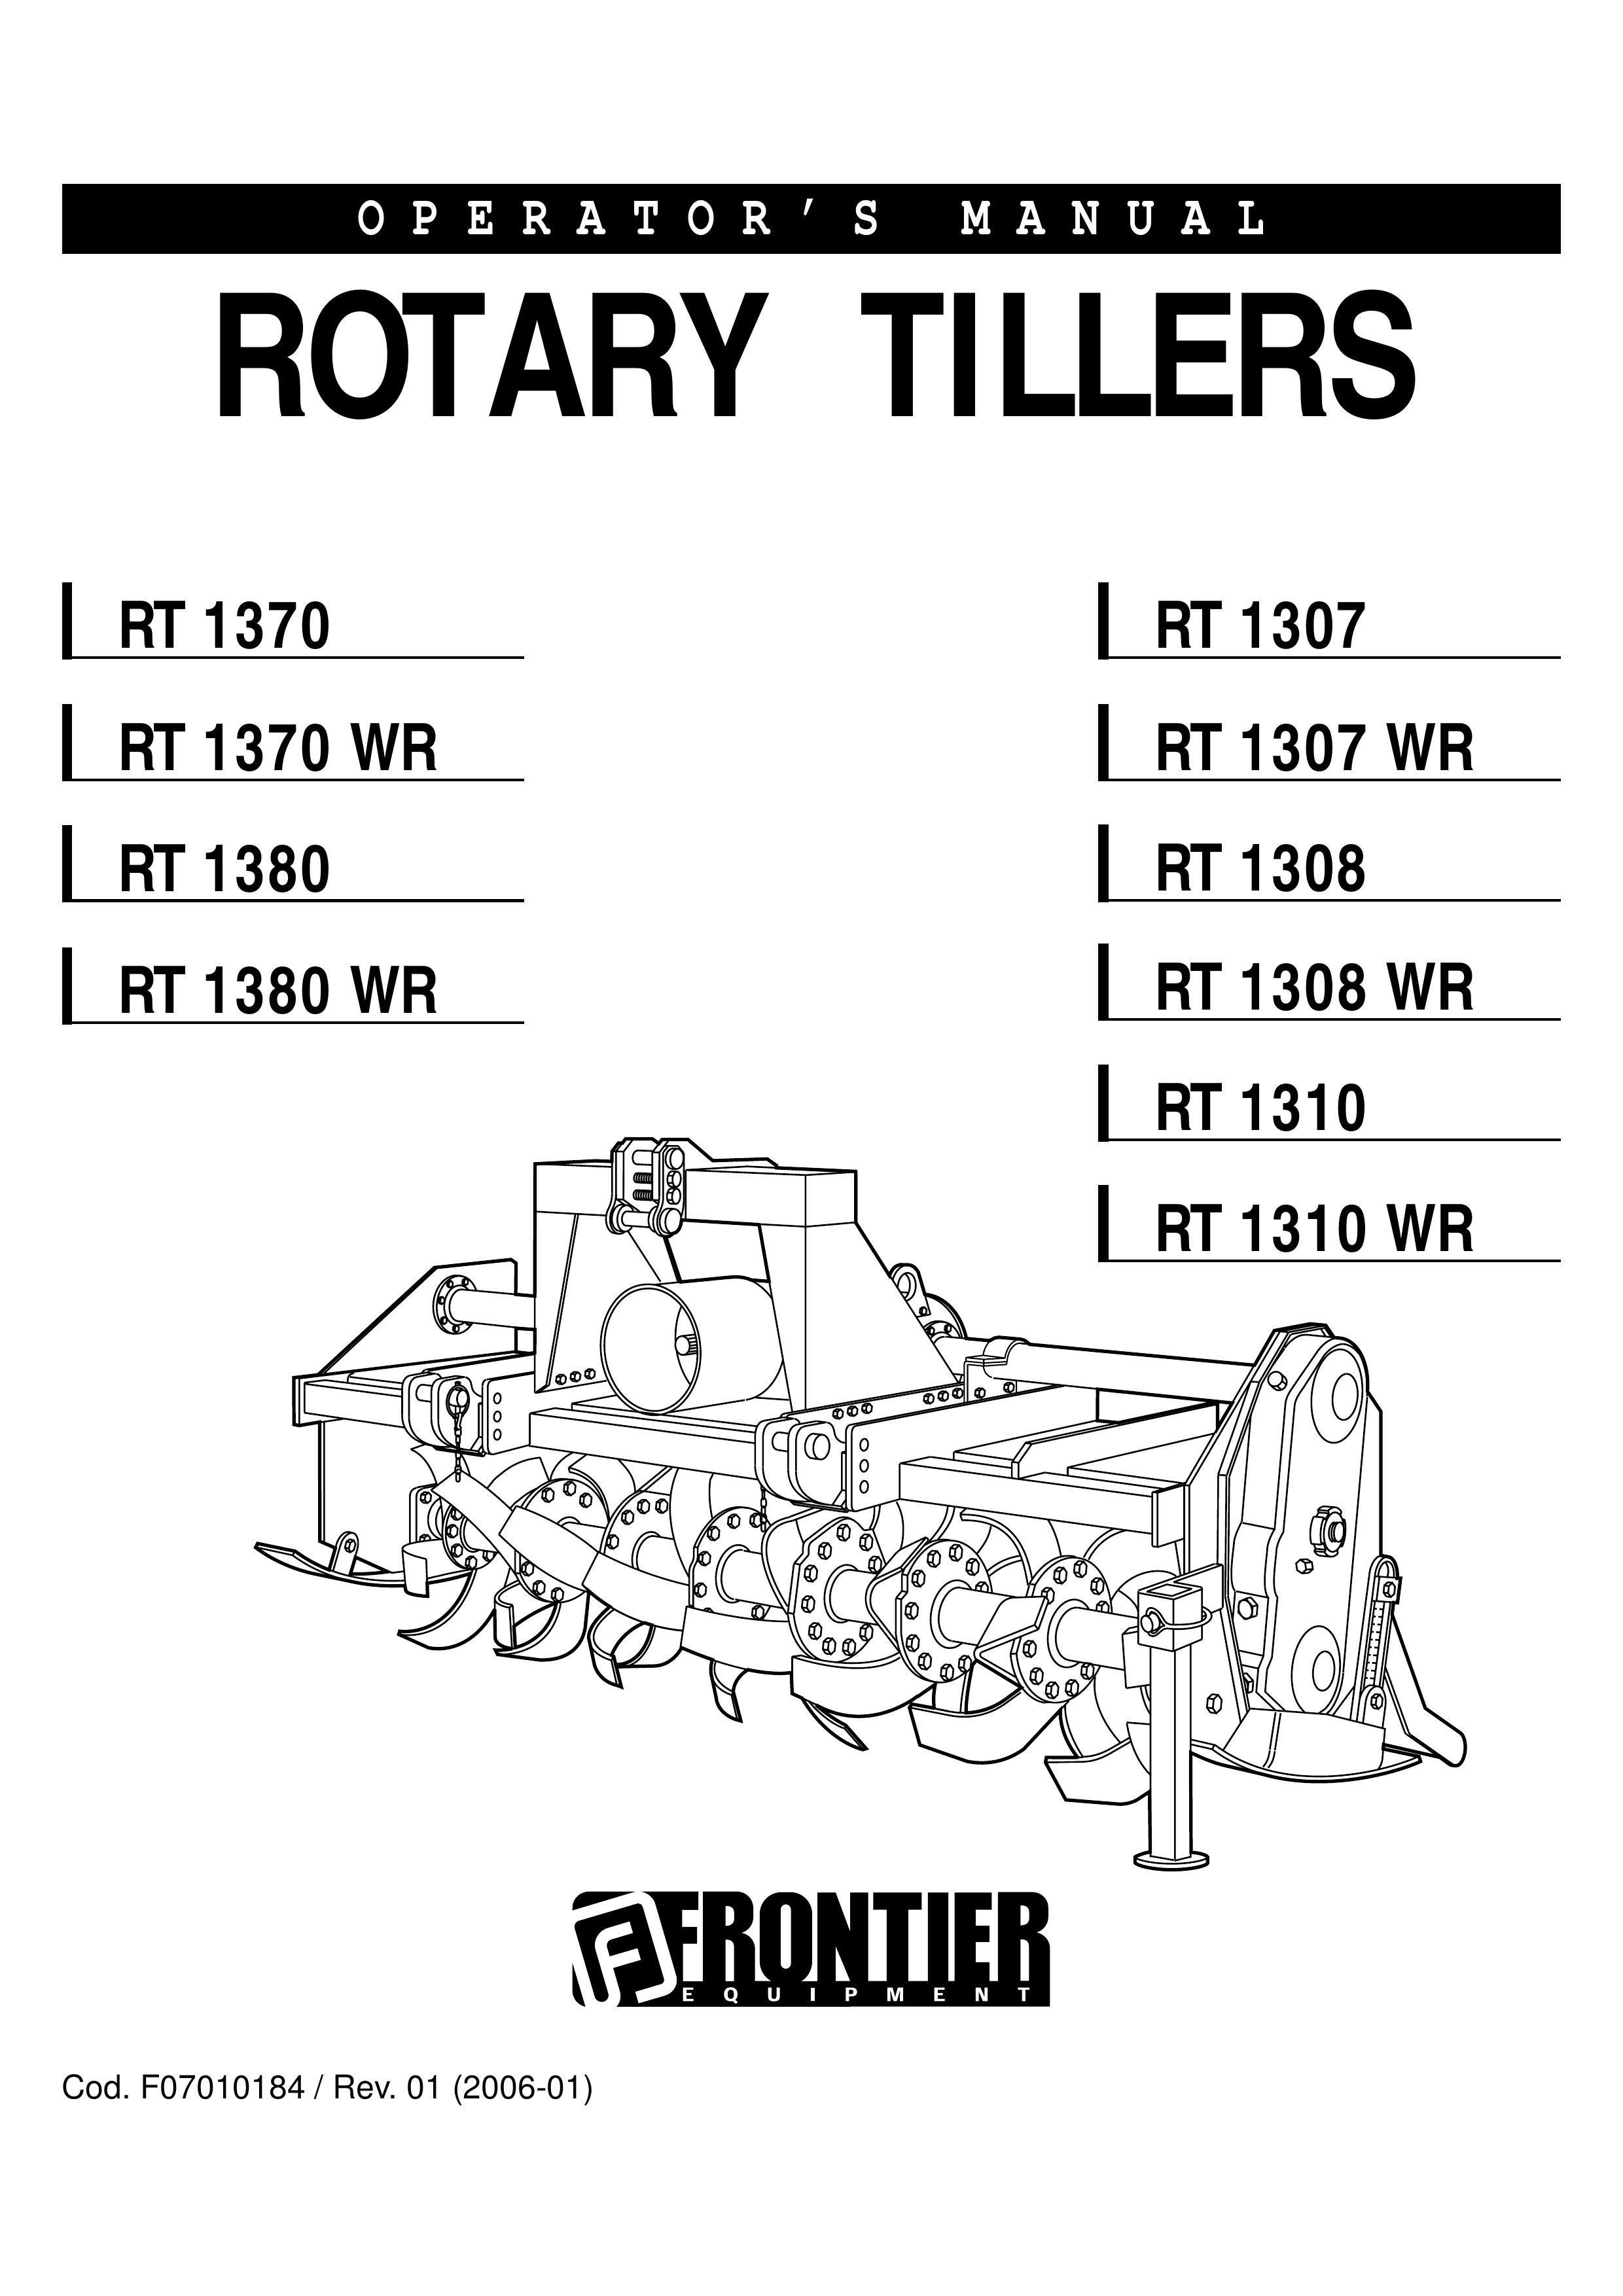 John Deere RT 1380 WR Tiller User Manual